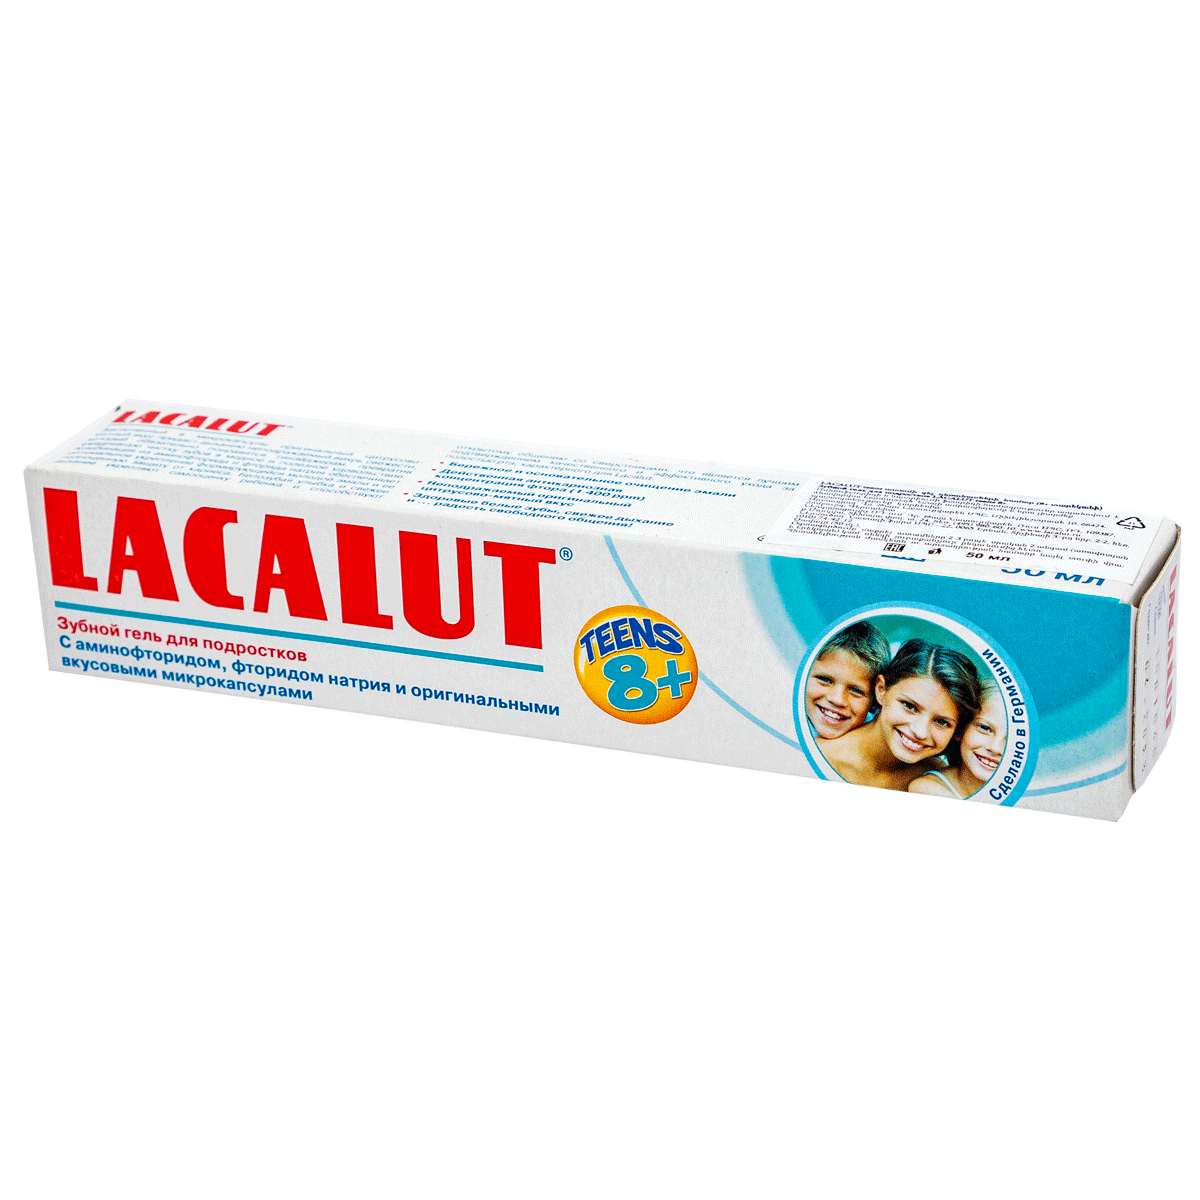 Ատամի մածուկ մանկական Lacalut